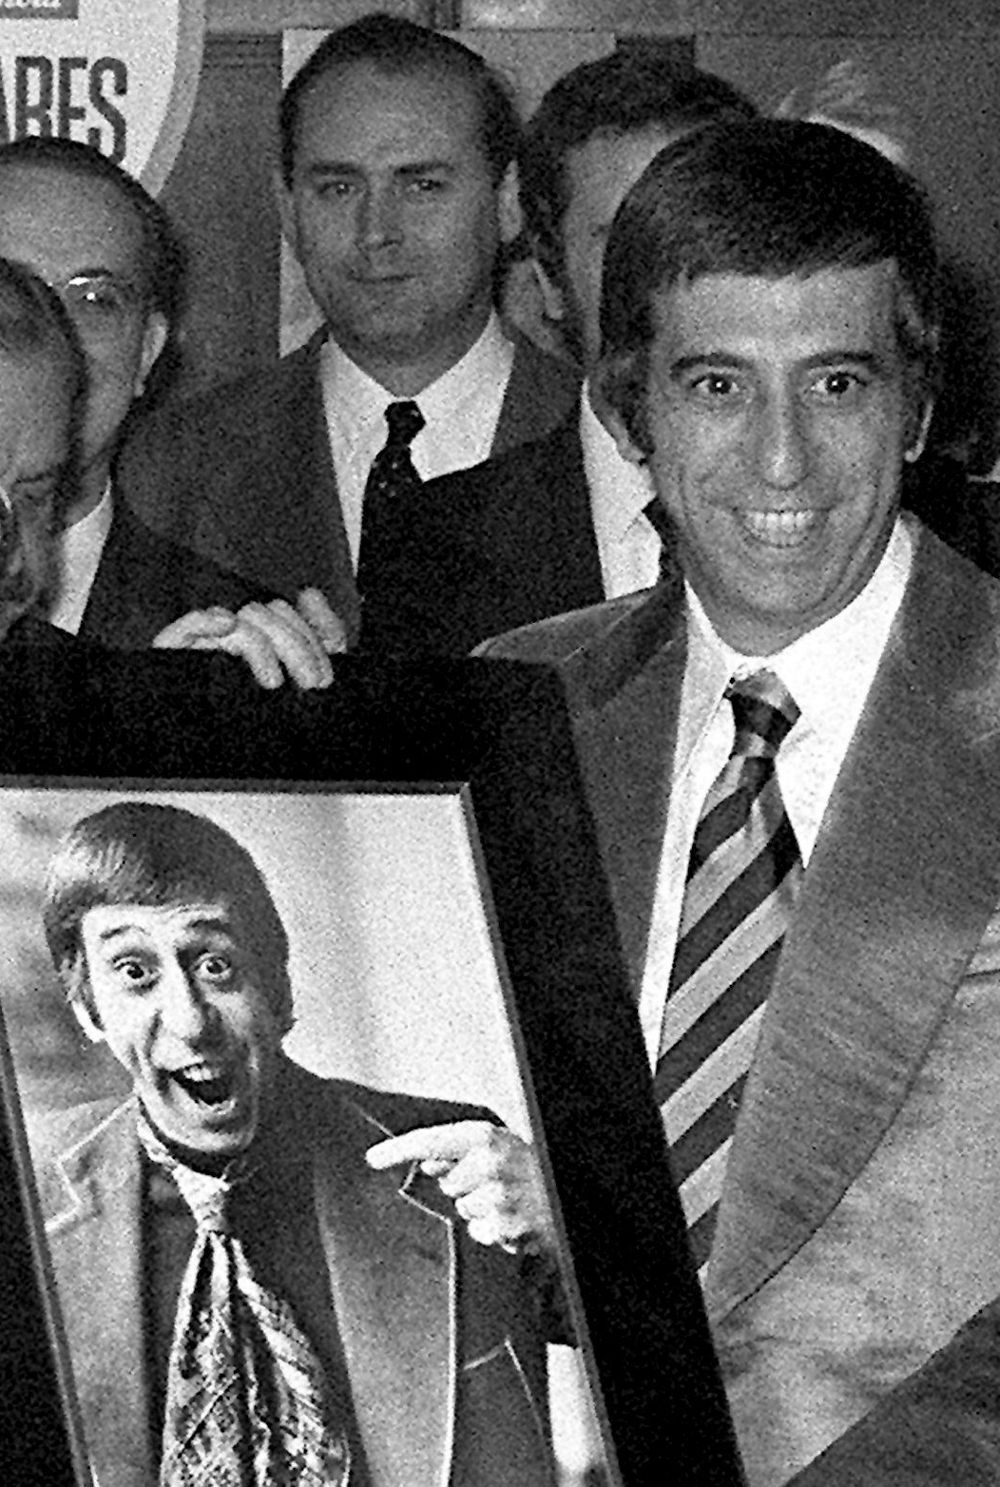 Foto de archivo, fechada en Madrid el 22 de enero de 1972, del humorista y actor argentino Jorge Alberto Ripoli, conocido como Joe Rígoli.